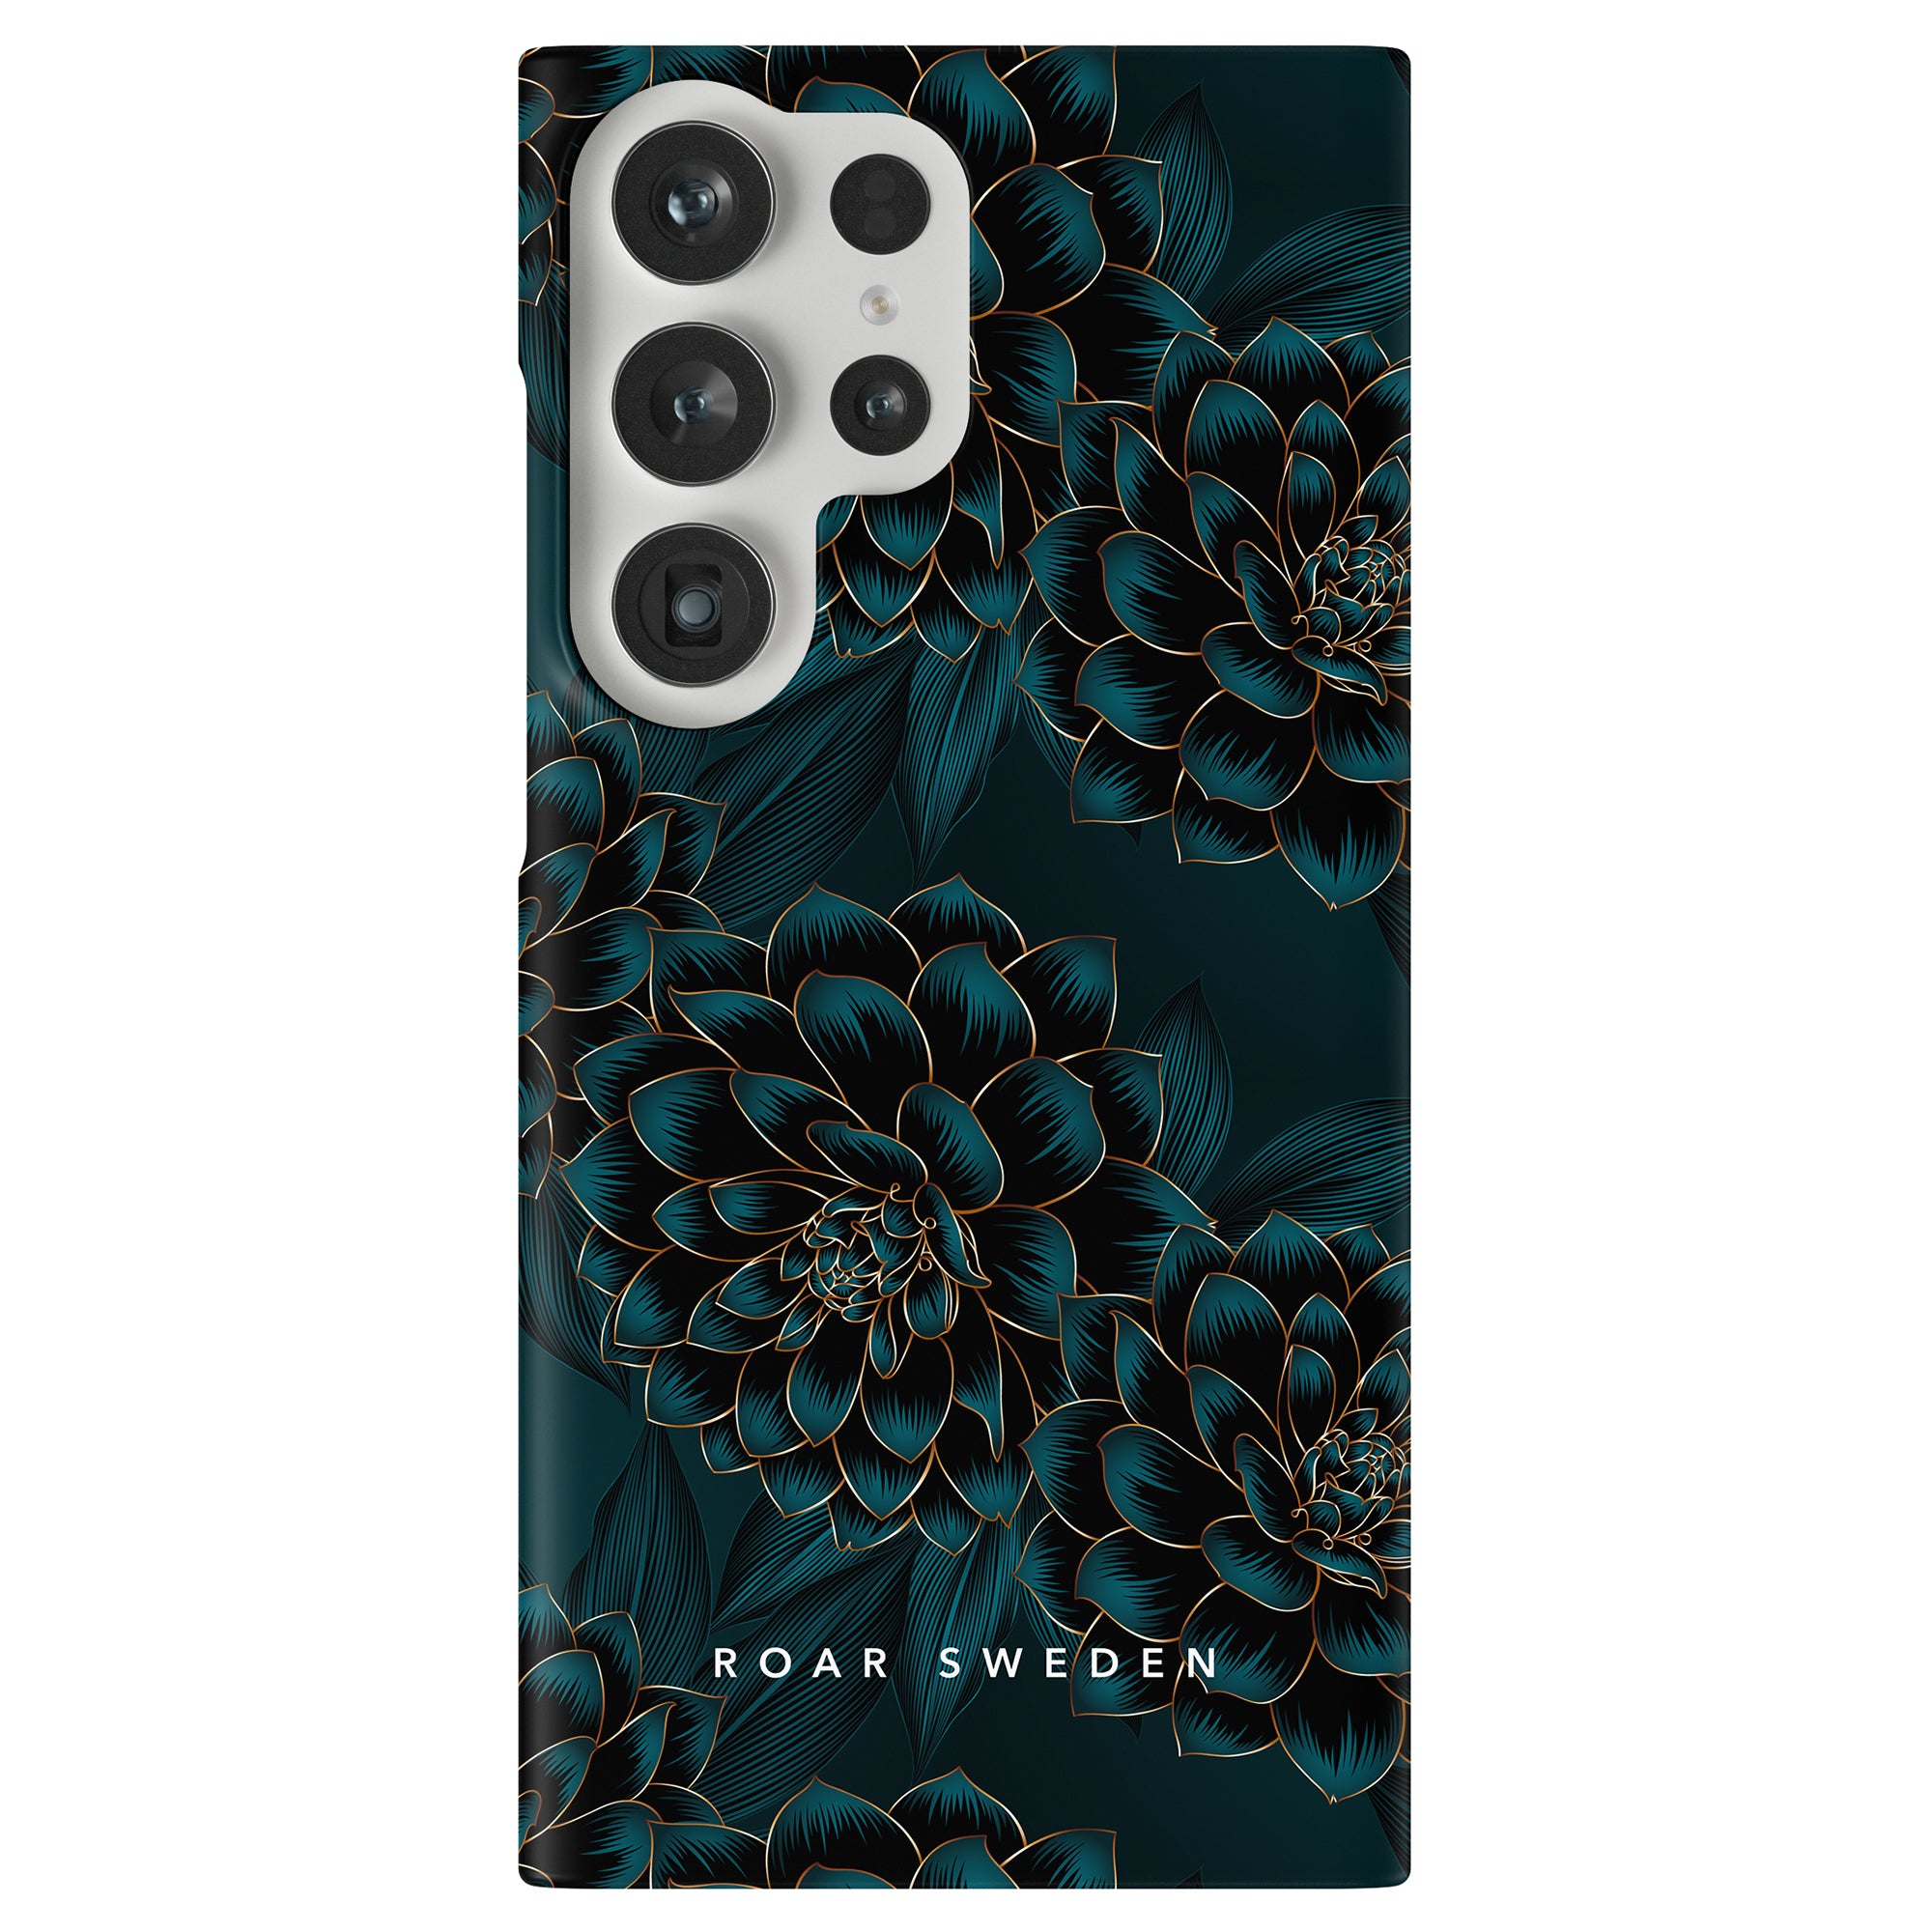 Ett telefonfodral med svart och blått blommönster, som erbjuder både skydd och stil. Vi introducerar Petrol - Slim fodral, som kombinerar skydd och design sömlöst till ett fantastiskt tillbehör.